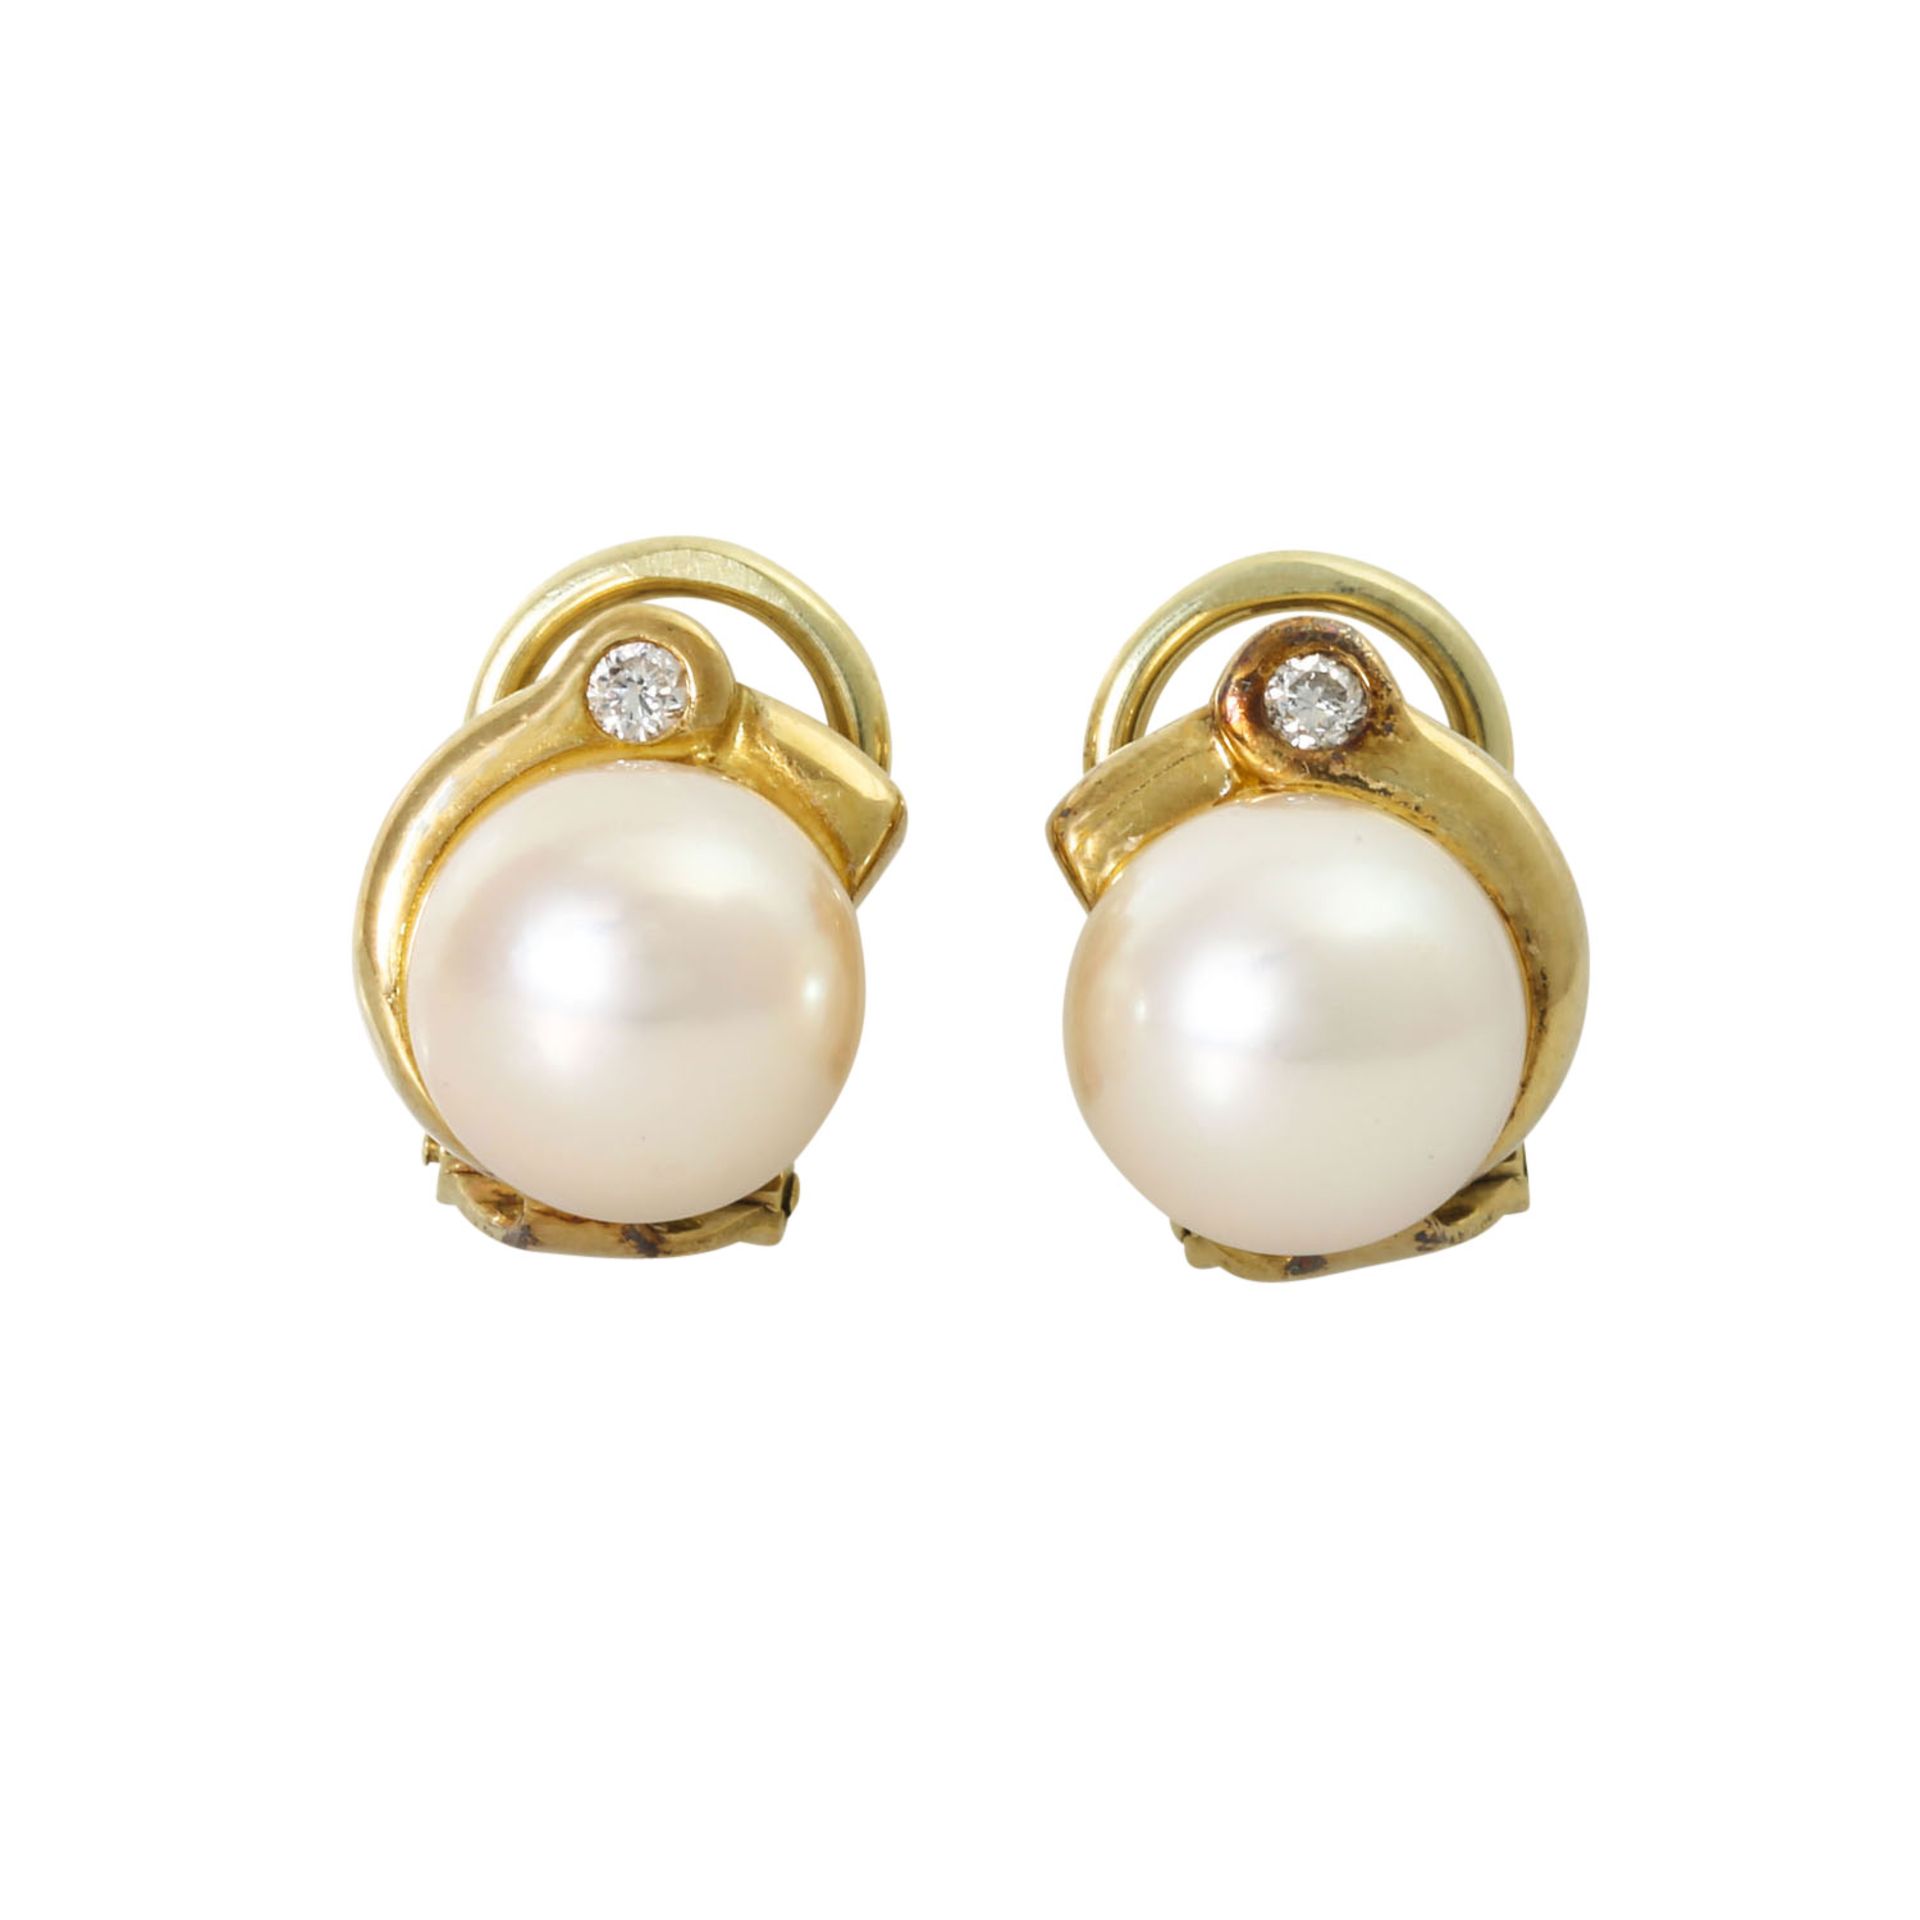 Schmuckset Ring und Ohrclips mit Perlen und Brillanten zus. ca. 0,26 ct, - Image 3 of 3